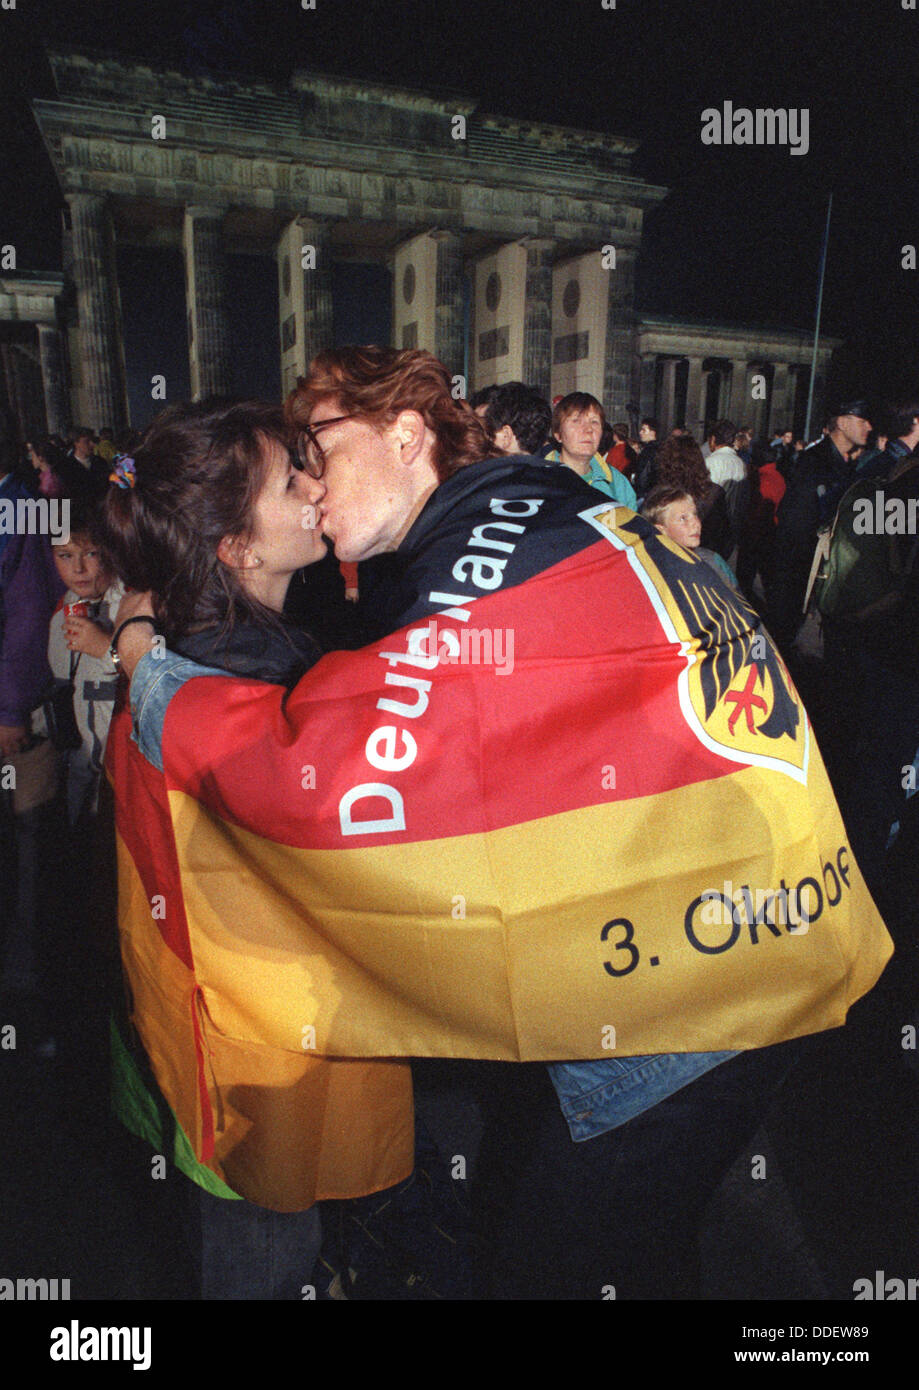 Ein junges Paar küsst vor dem Brandeburg Tor während der Feier der deutschen Einheit in Berlin, Deutschland, 2. Oktober 1990. 45 Jahre nach dem Ende des zweiten Weltkriegs, ist Deutschland in einer Nation vereint. Die innerdeutschen Grenze am 9. November 1989 eröffnete und leitete den Prozess der Wiedervereinigung. Stockfoto